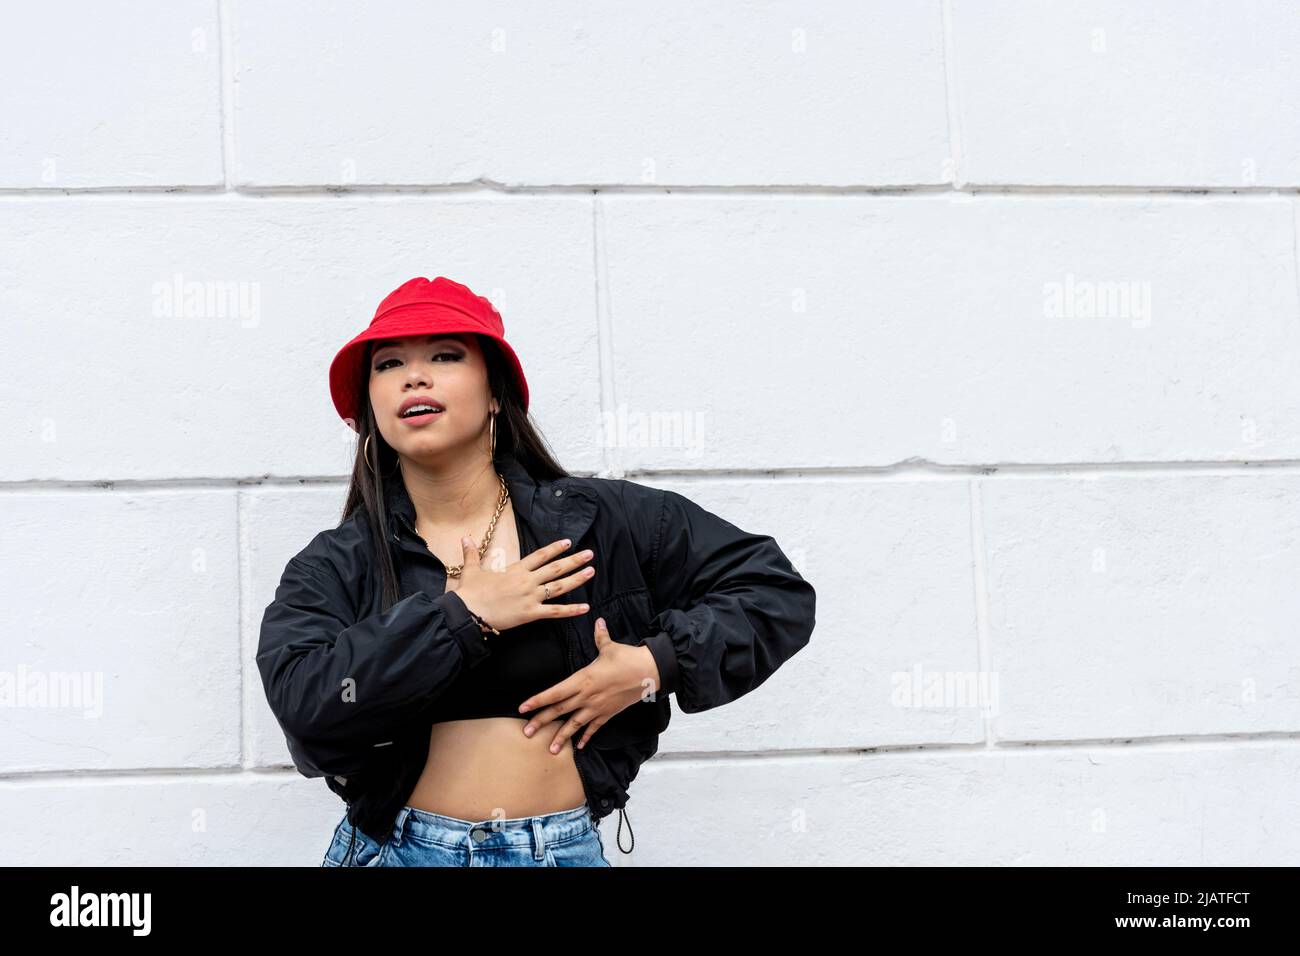 Junge lateinische Frau Hip-Hop tanzen auf der Straße mit einem roten Hut, Panama, Mittelamerika - Stock Foto Stockfoto